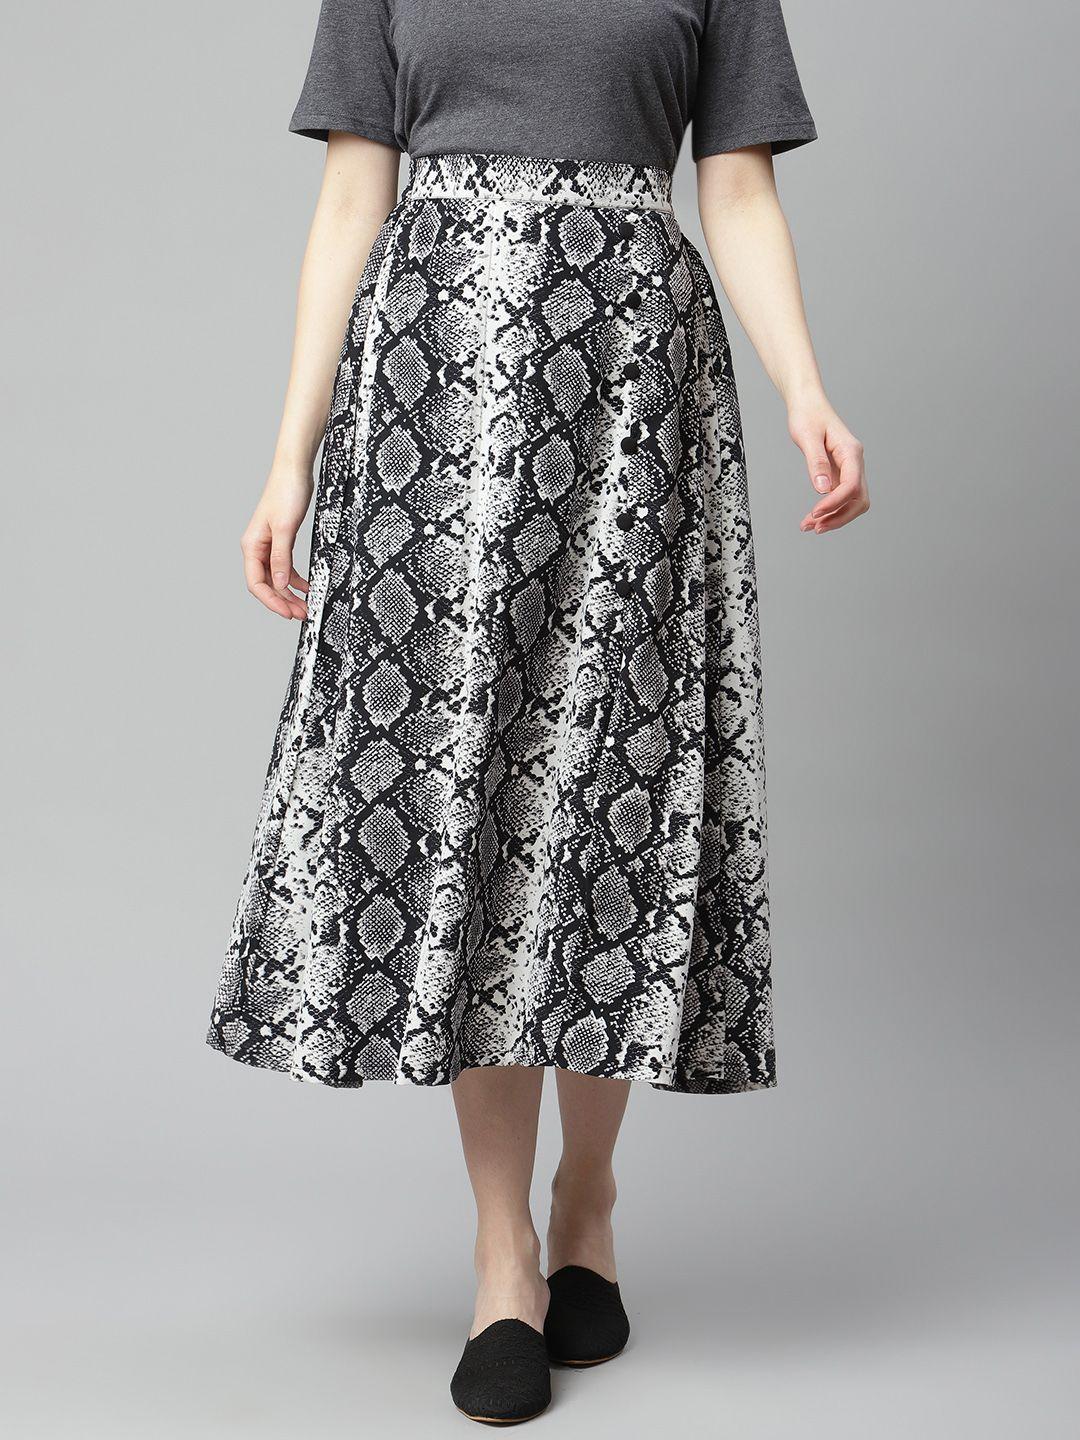 pluss-women-white-&-black-animal-skin-print-flared-hem-a-line-midi-skirt